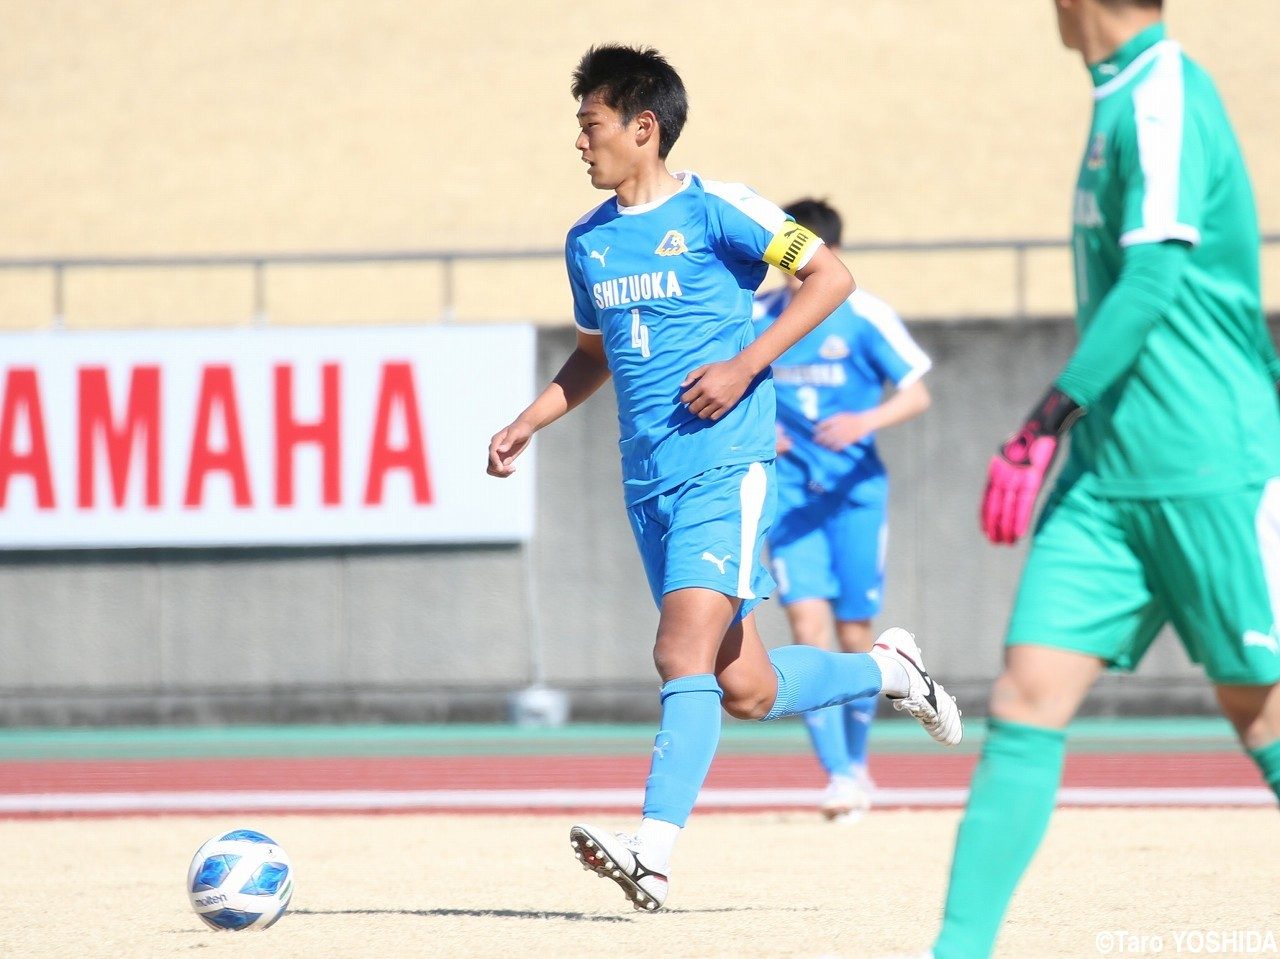 静岡県ユース選抜のキャプテン、CB行徳が日本高校選抜相手に存在感ある動き(4枚)